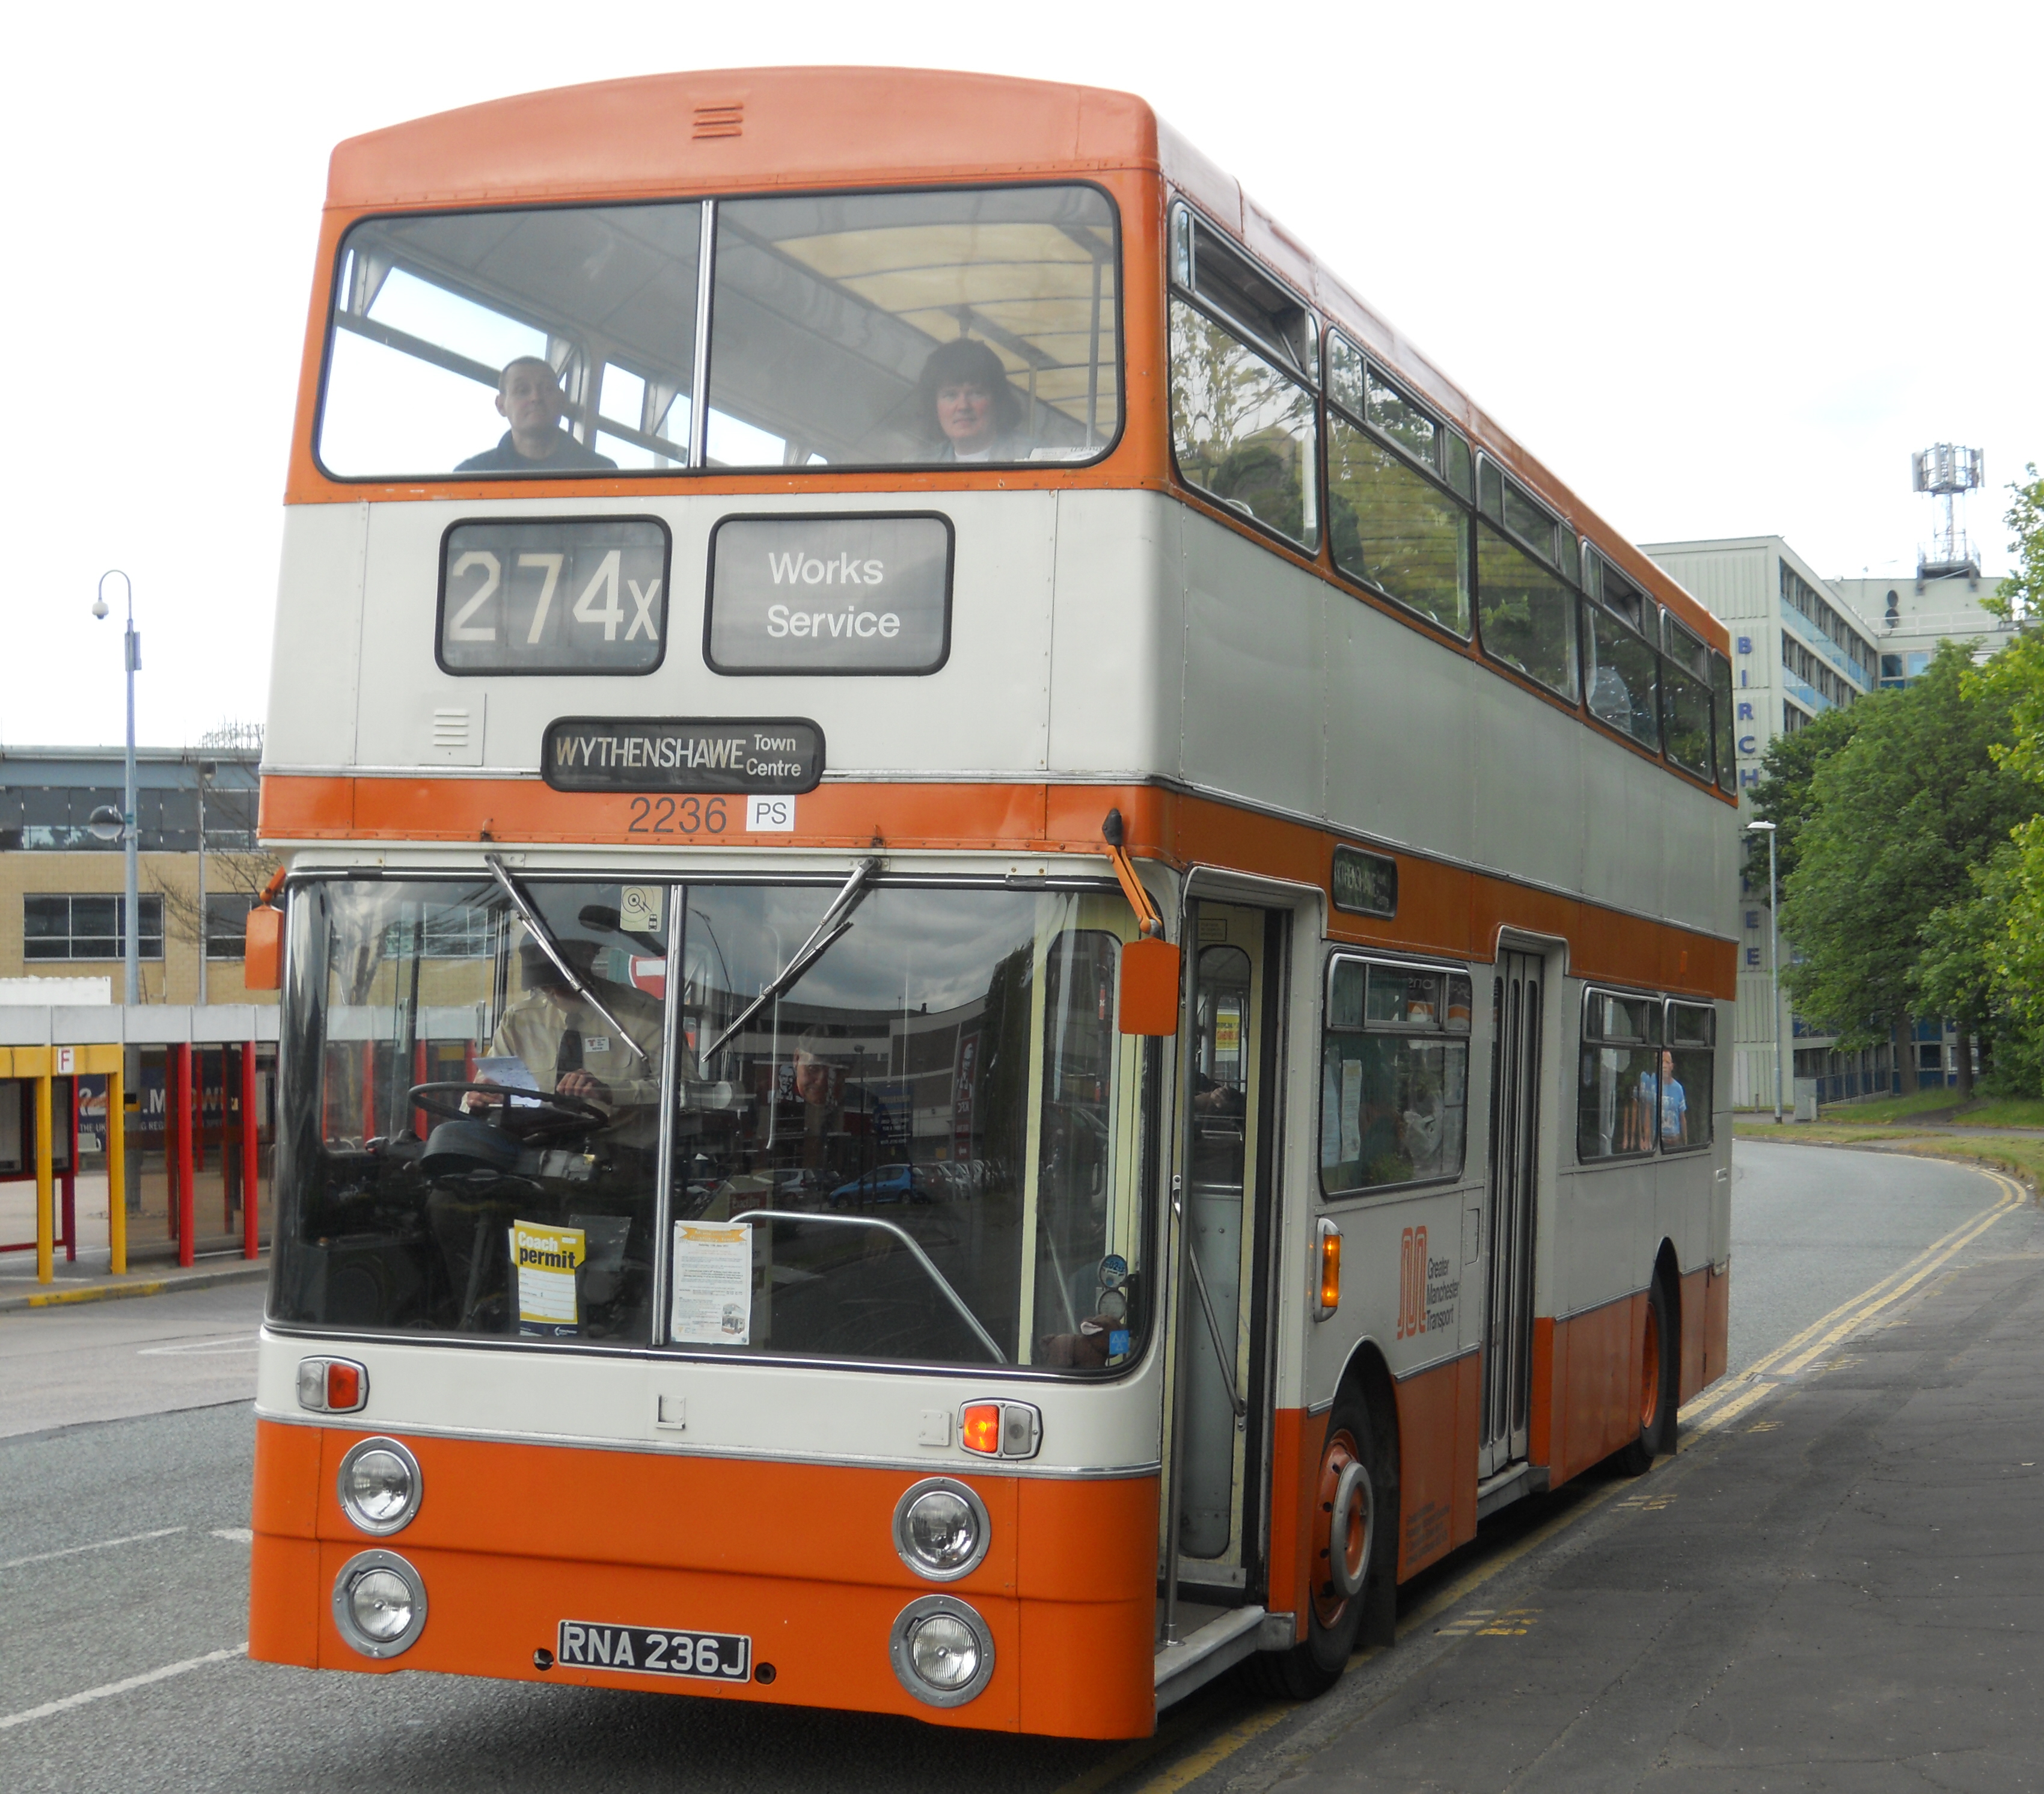 Preserved_Greater_Manchester_Transport_bus_2236_(RNA_236J)_1971_Daimler_Fleetline_Park_Royal,_11_June_2011.jpg